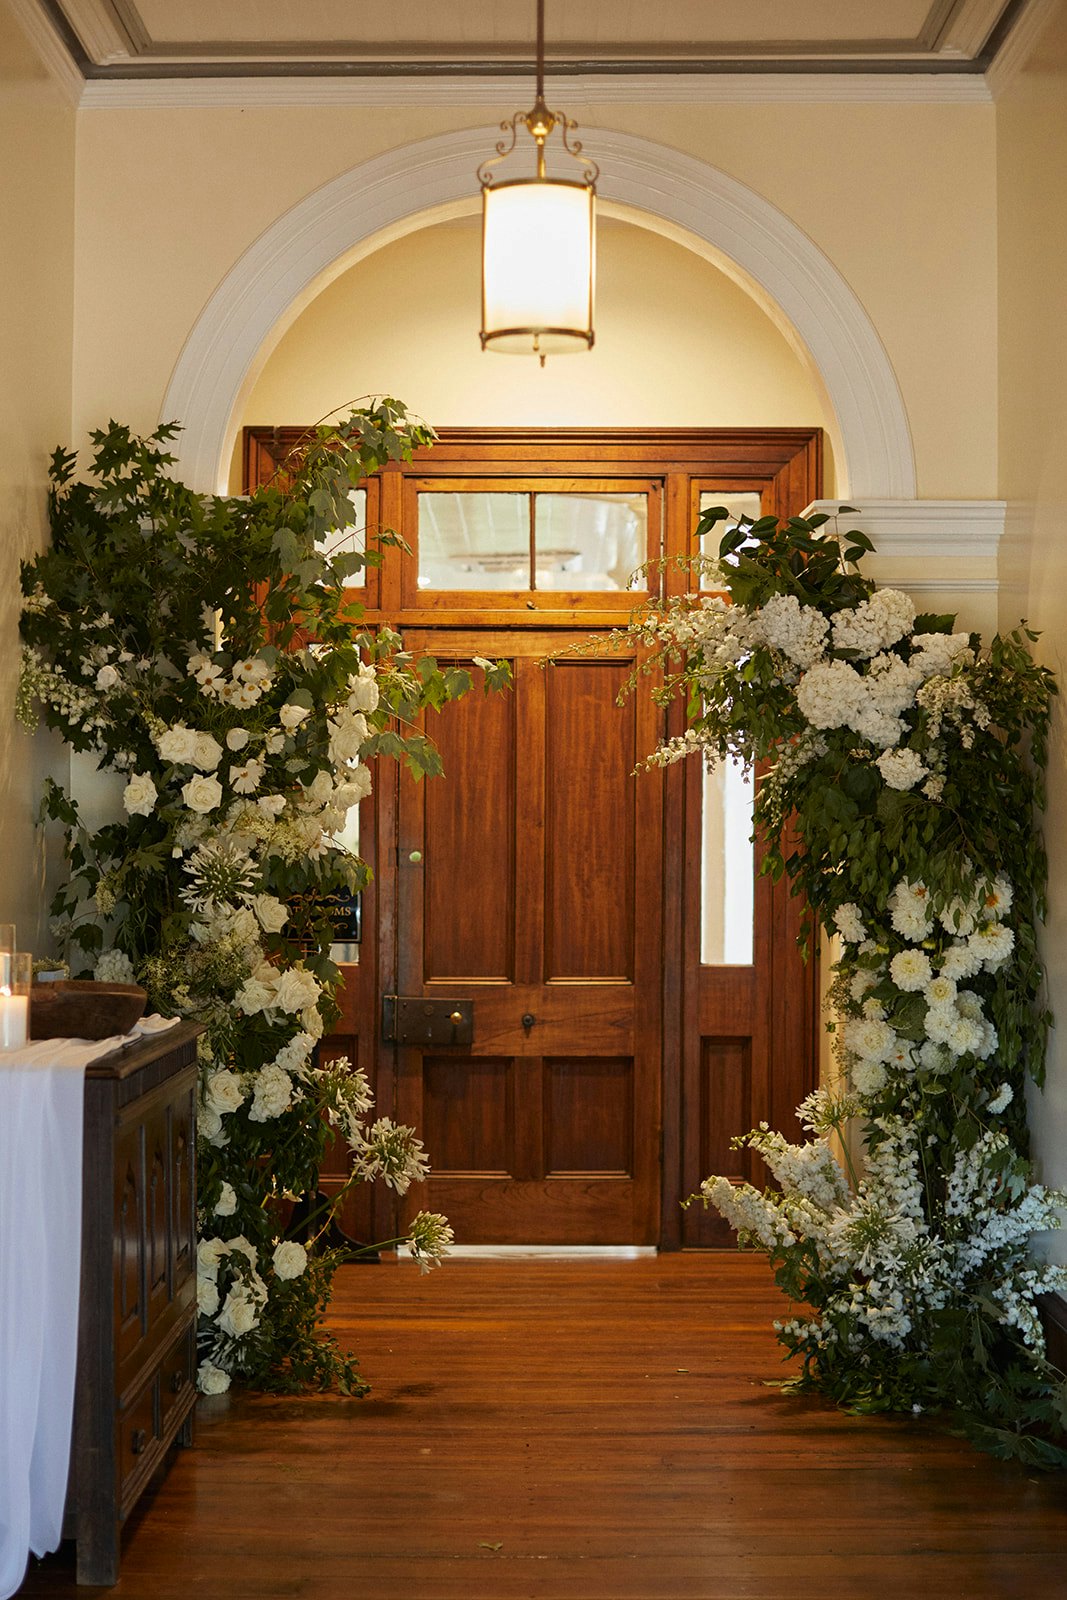 Flowers in hallway with large wooden door